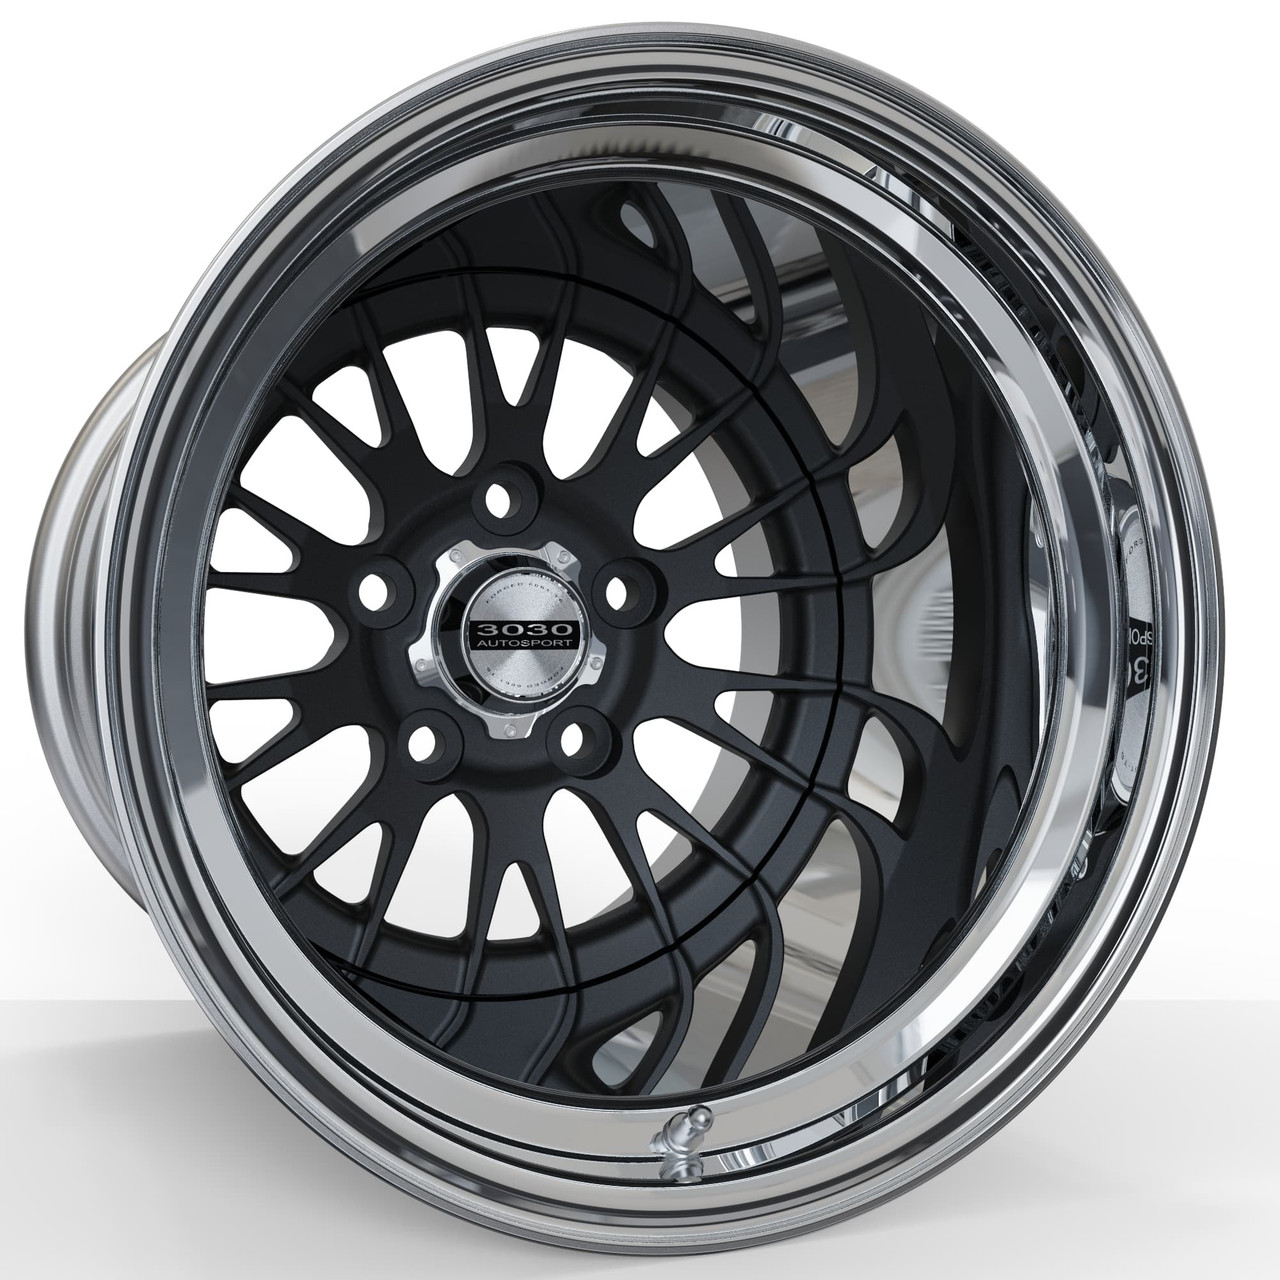 Legend ES - Street & Strip Forged Drag Racing Wheel Black Matte _Polished